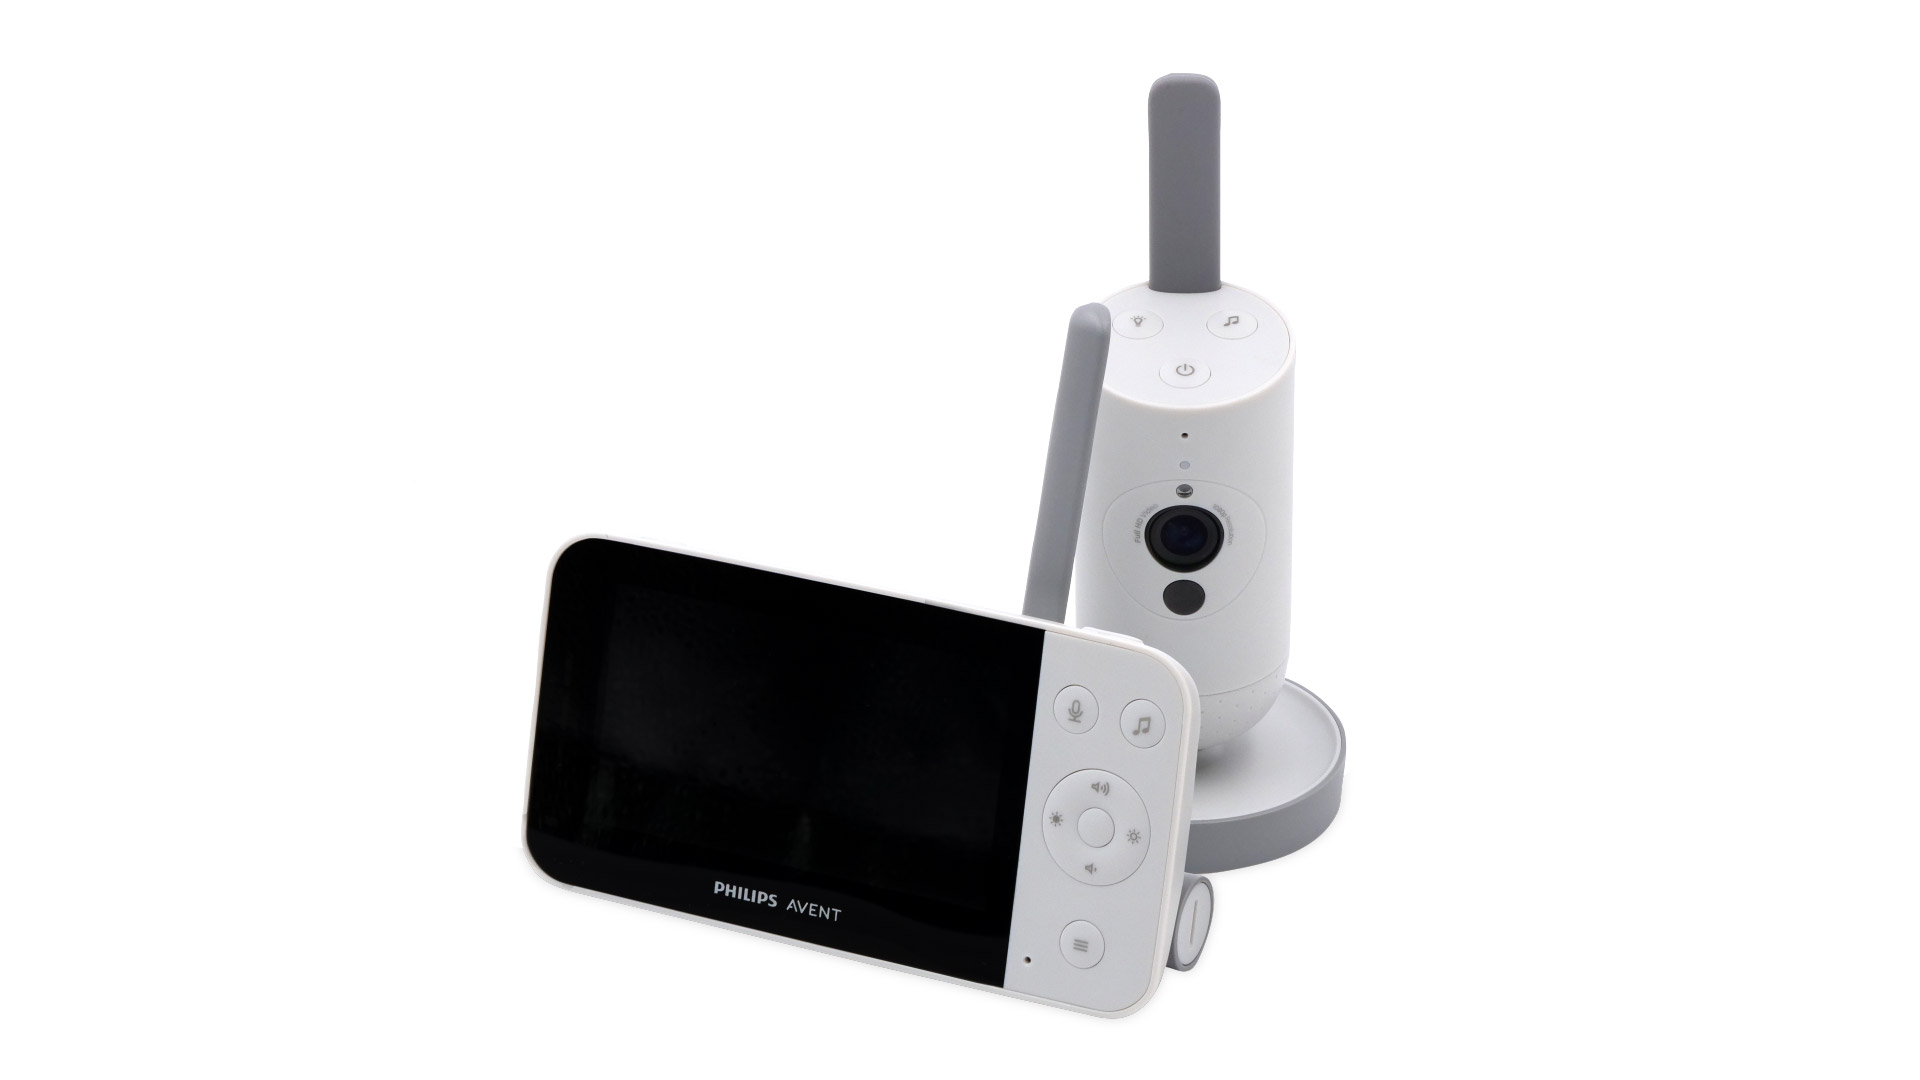 BOIFUN Babyphone mit Kamera 5 Zoll LCD Bildschirm Baby Monitor Kamera  3×Zoom VOX